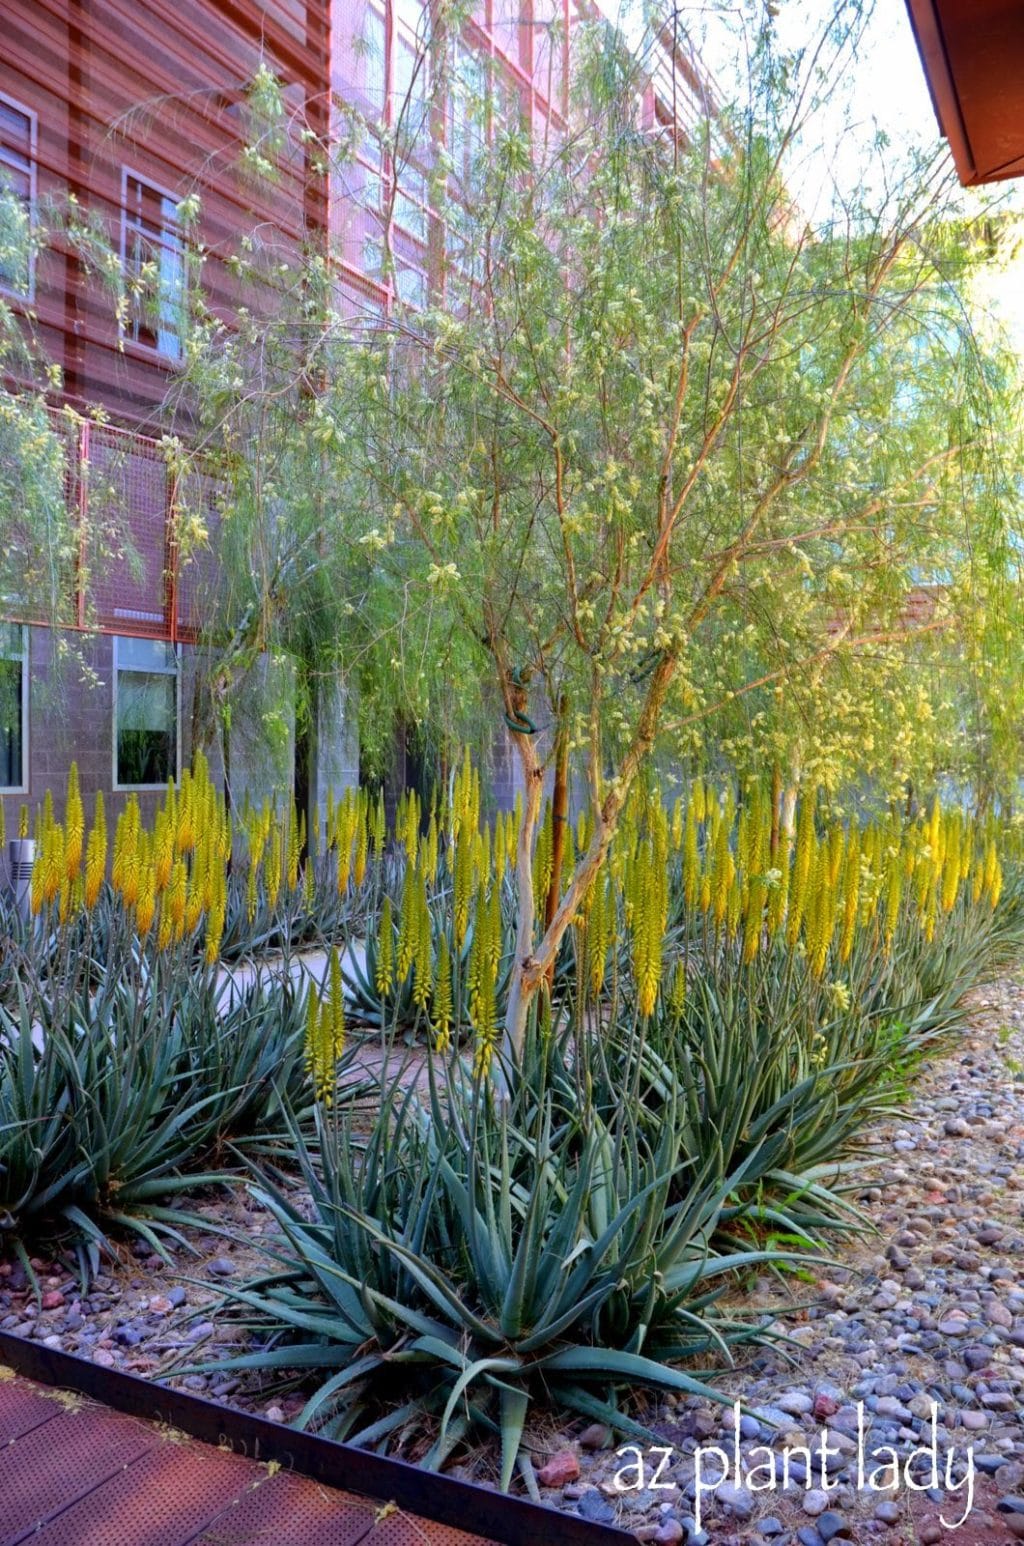 Aloe Vera planted in rows underneath Palo Blanco trees.